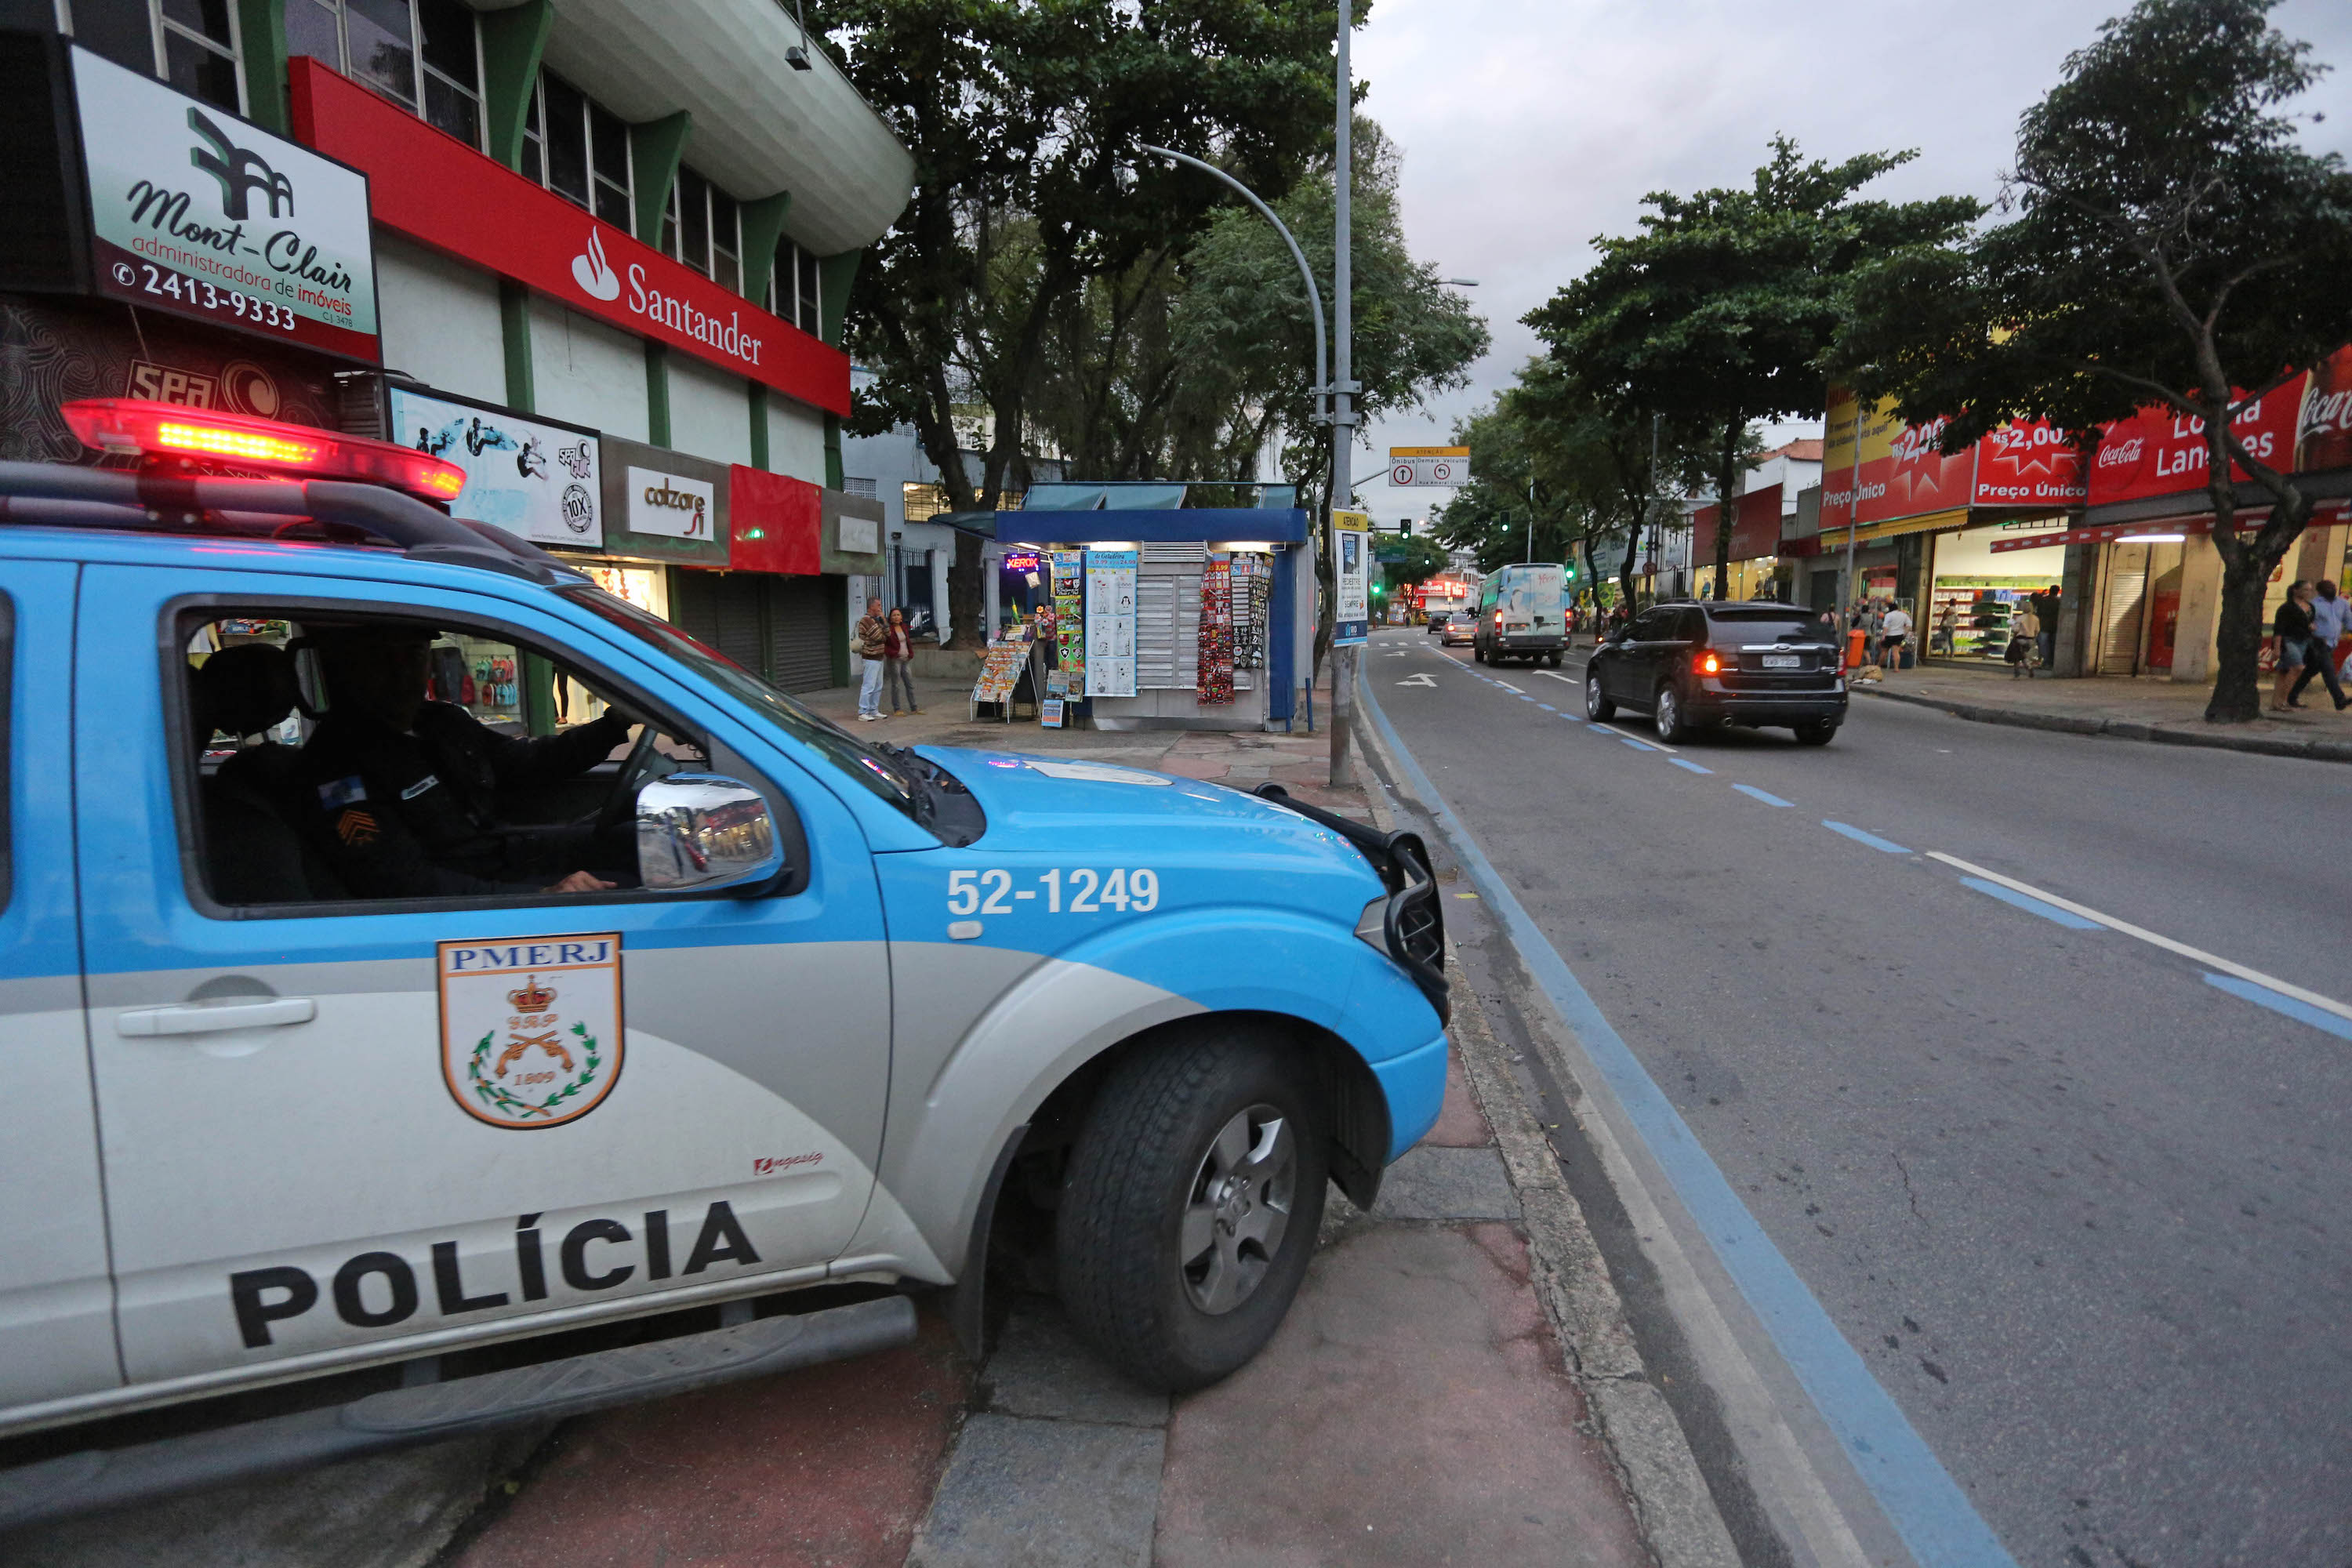 Rio’s Latest Crime Statistics Show 37 Percent Increase in Auto Theft